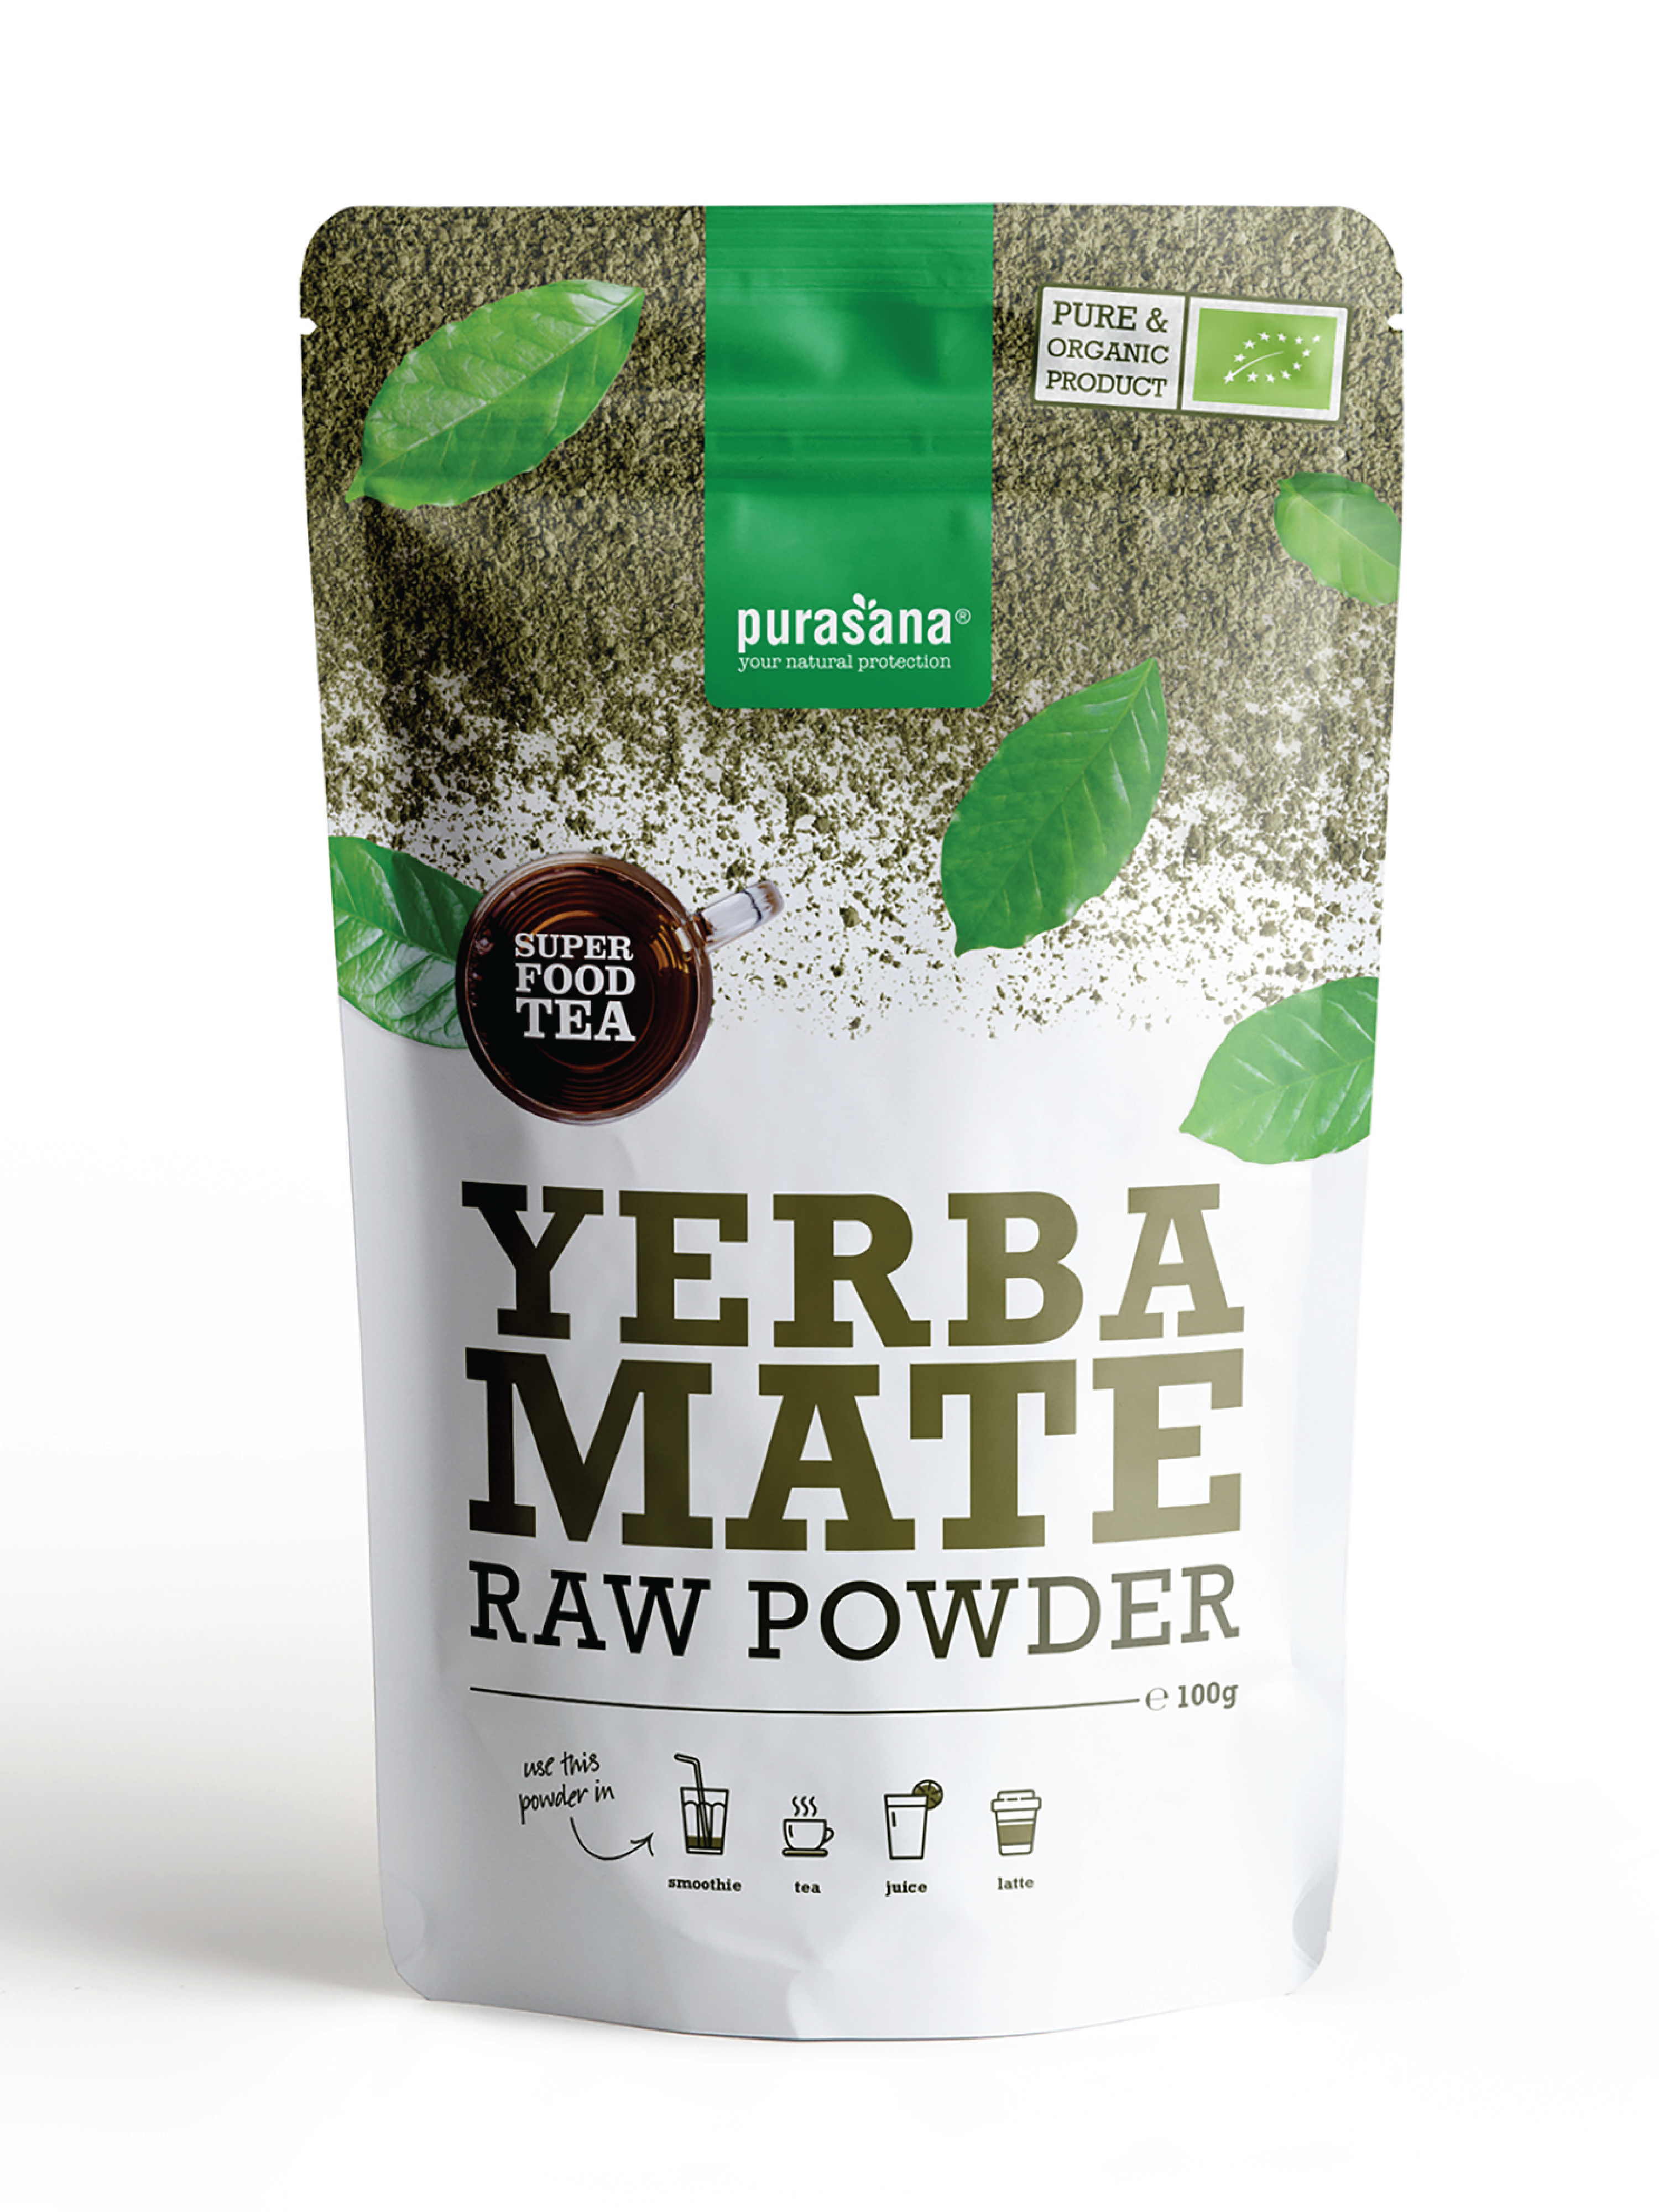 Purasana Yerba Mate Raw Powder, 36 g